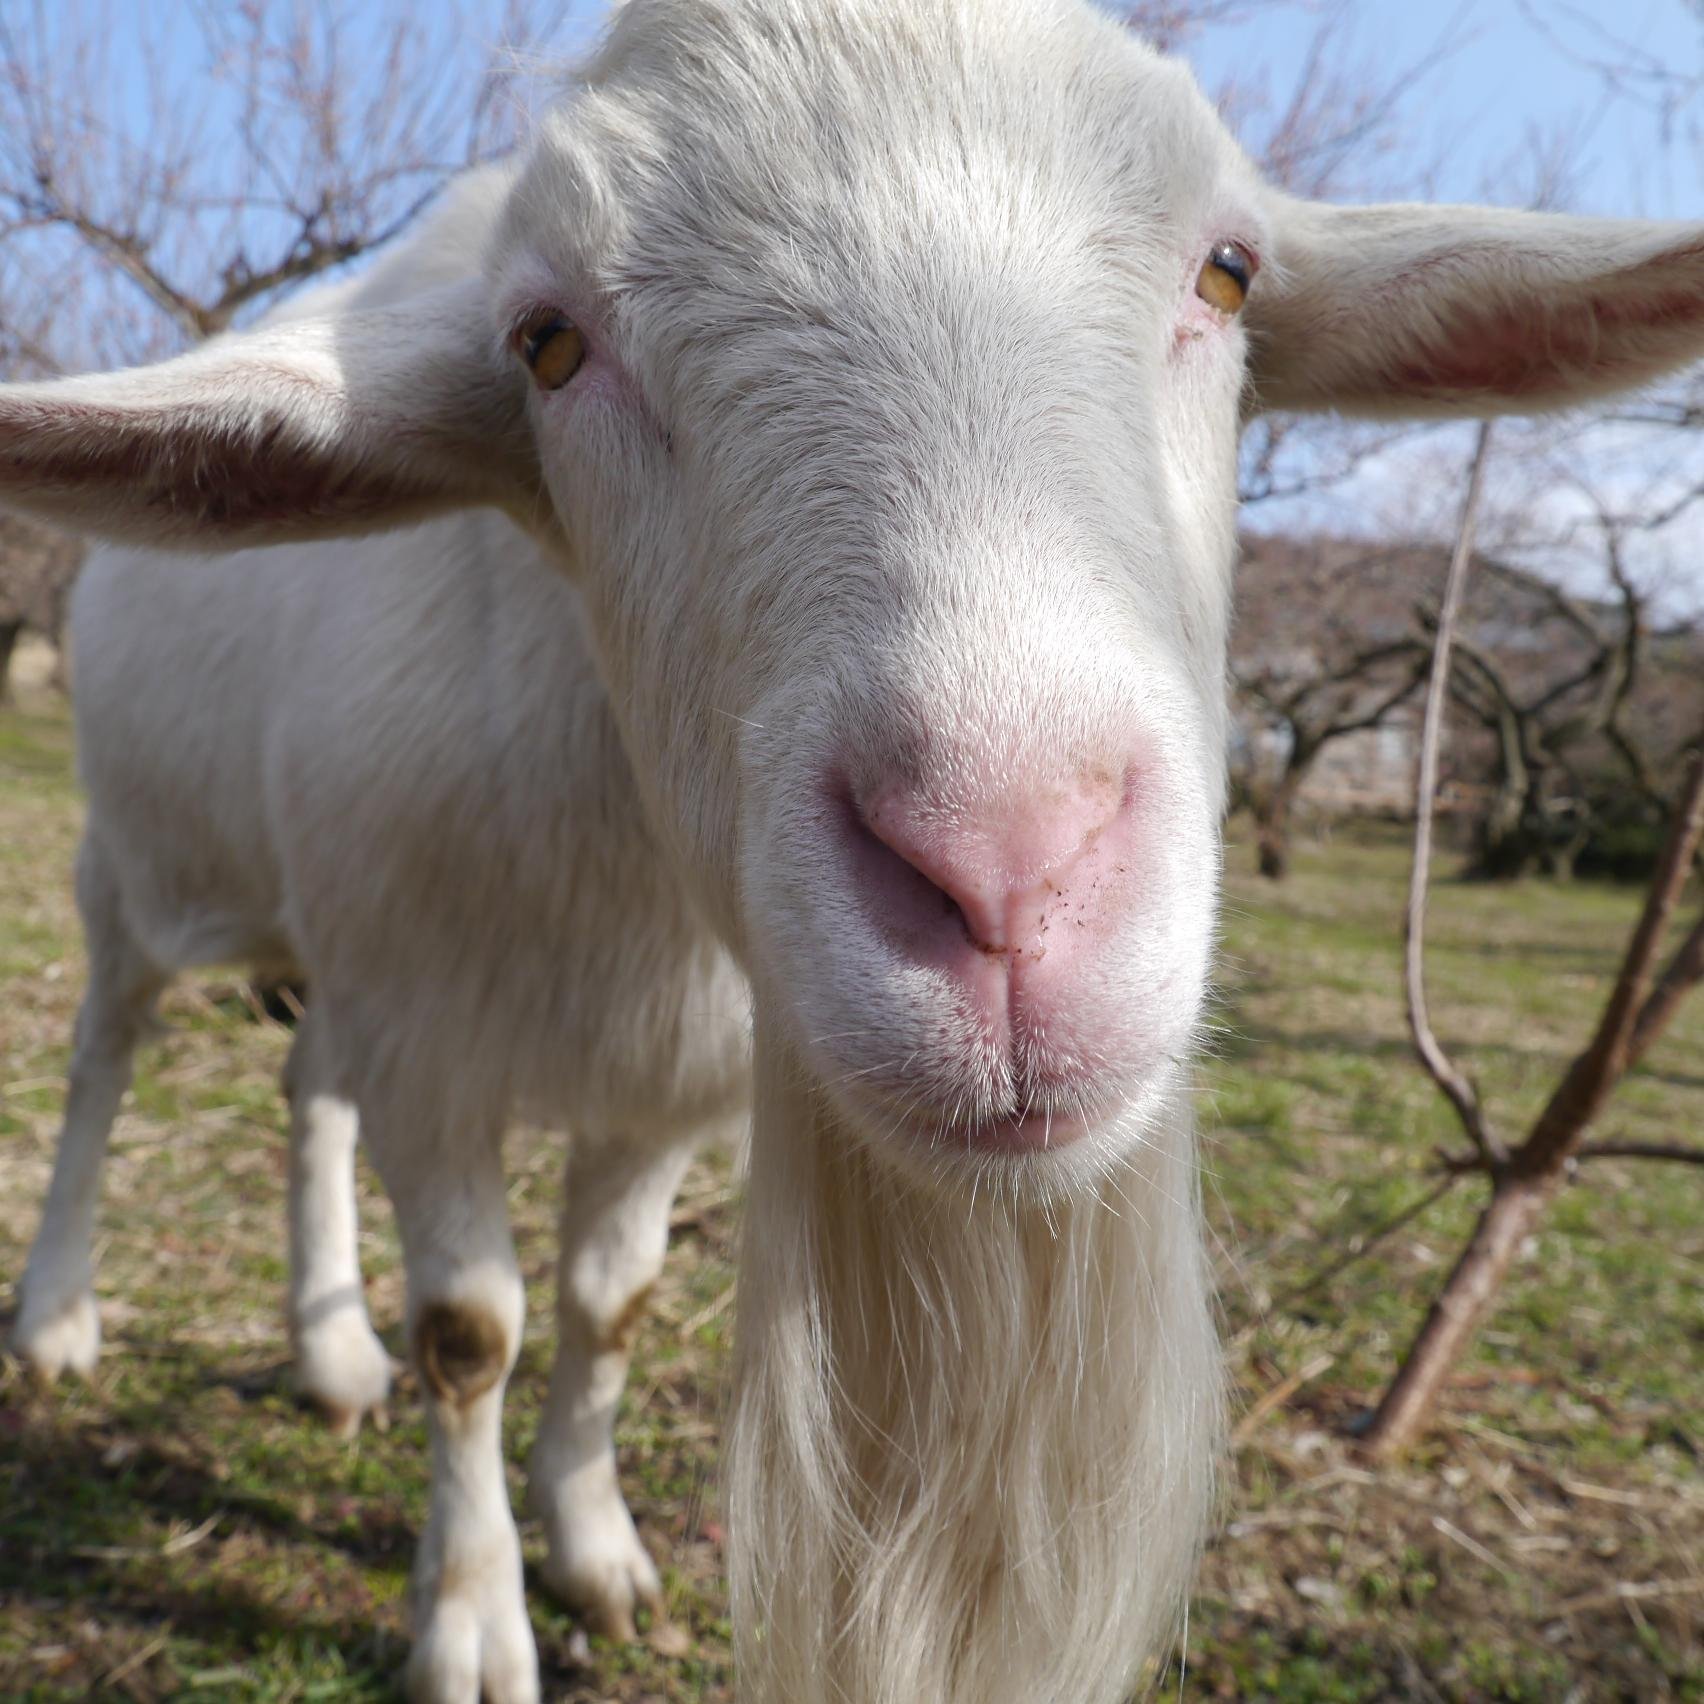 神奈川県西部、曽我山のふもとの農園で無農薬野菜を作っています。除草係のヤギさんと仲良く農作業してます。2014年9月より、武蔵小山駅前に不定期に無人販売所を出していく予定です。